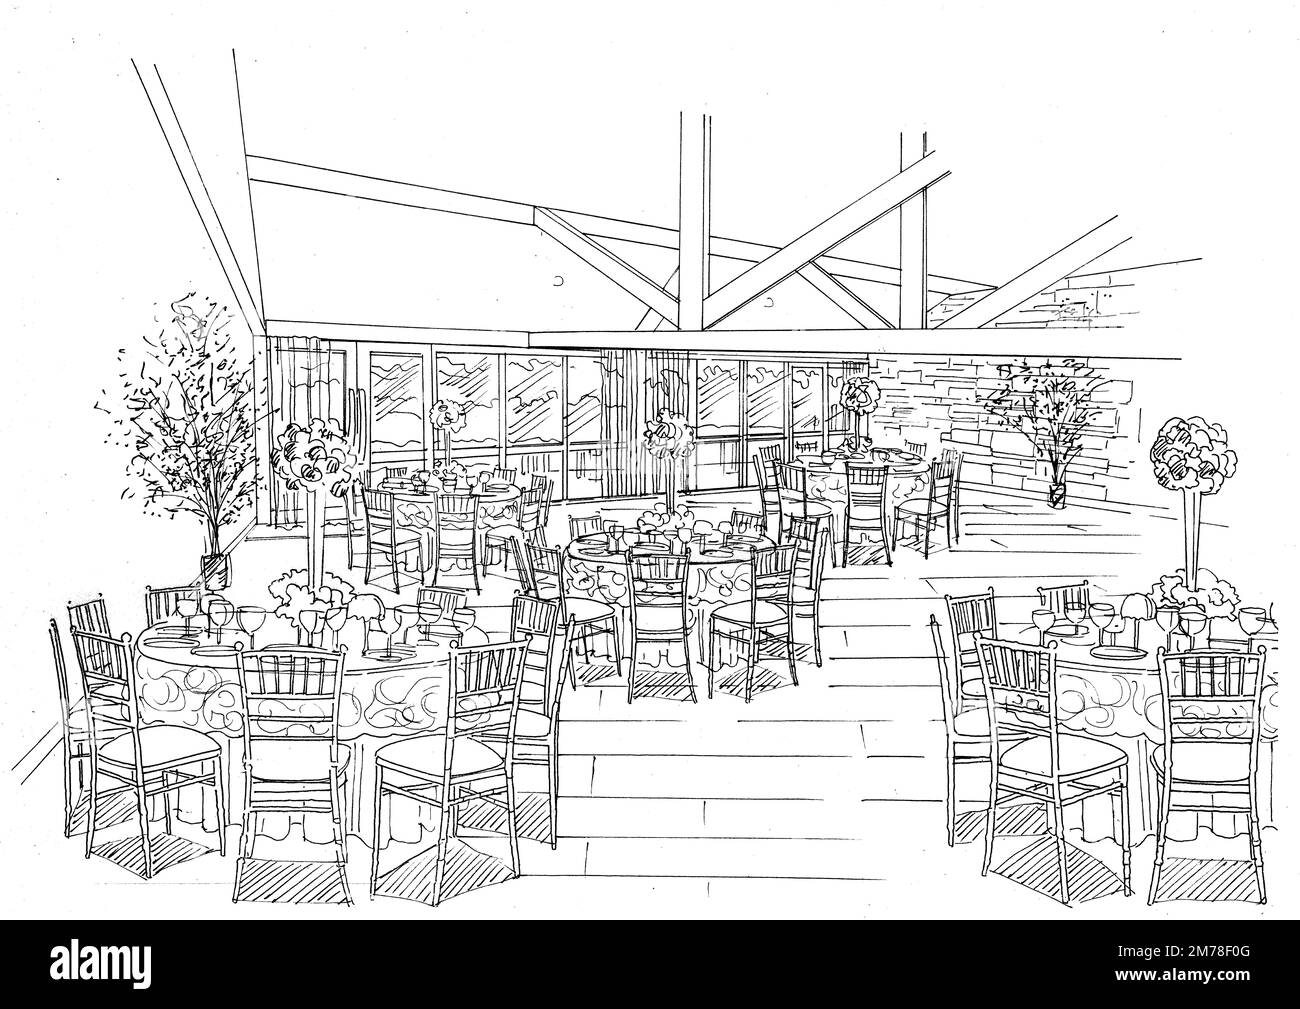 Schwarz-weiße Skizze eines Veranstaltungsraums auf weißem Hintergrund. Stockfoto